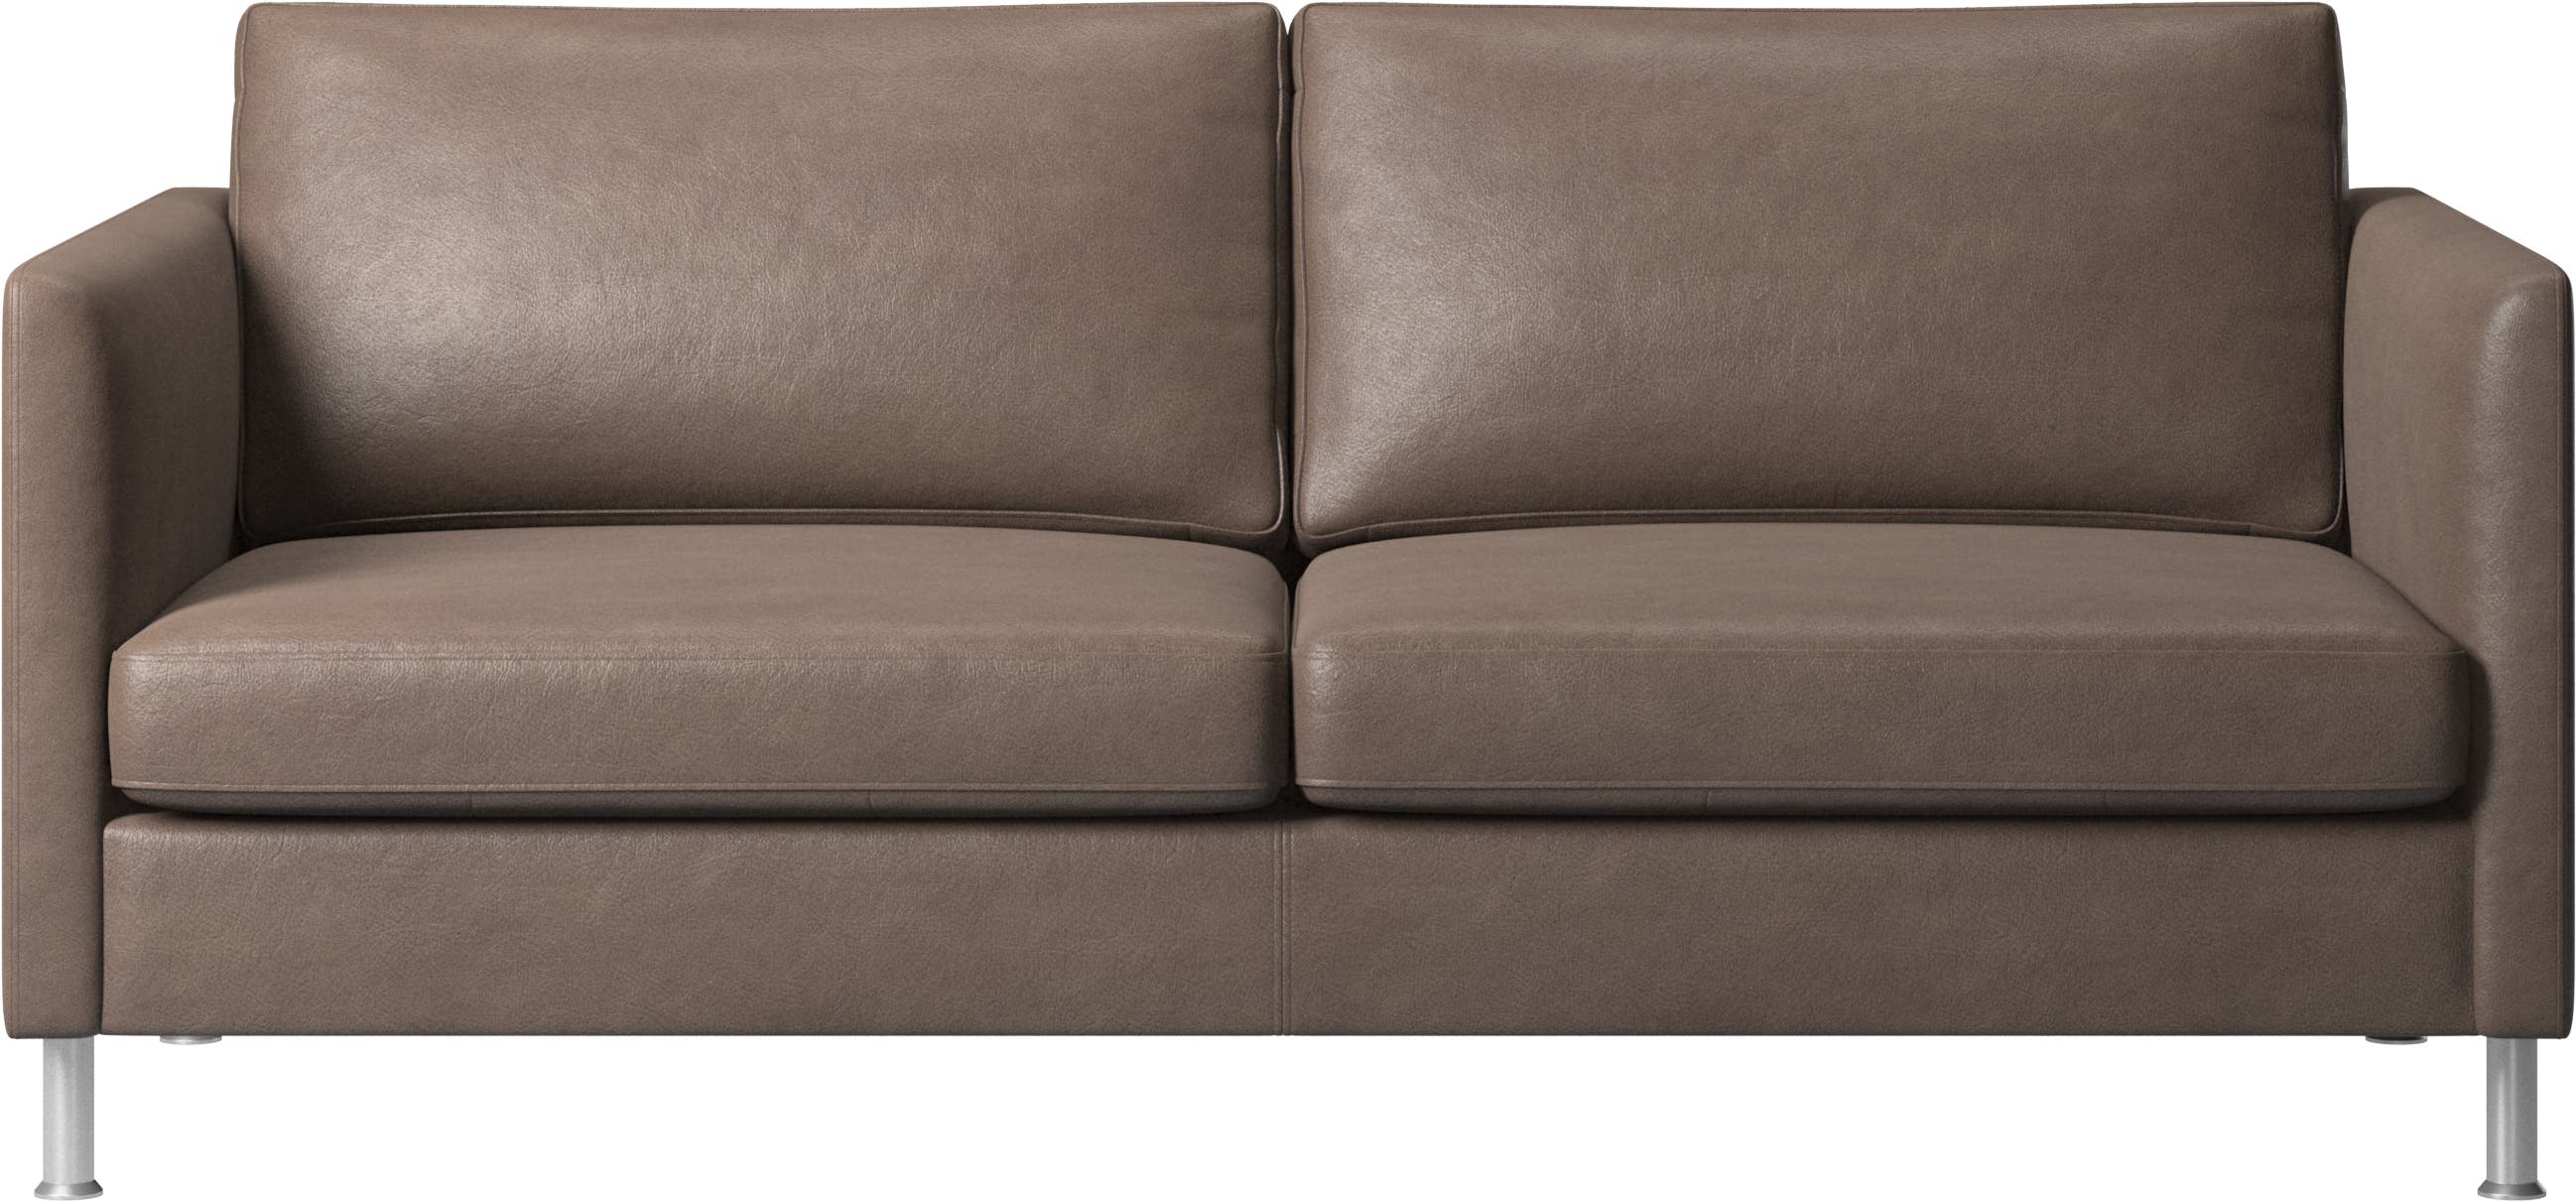 Sofa Indivi